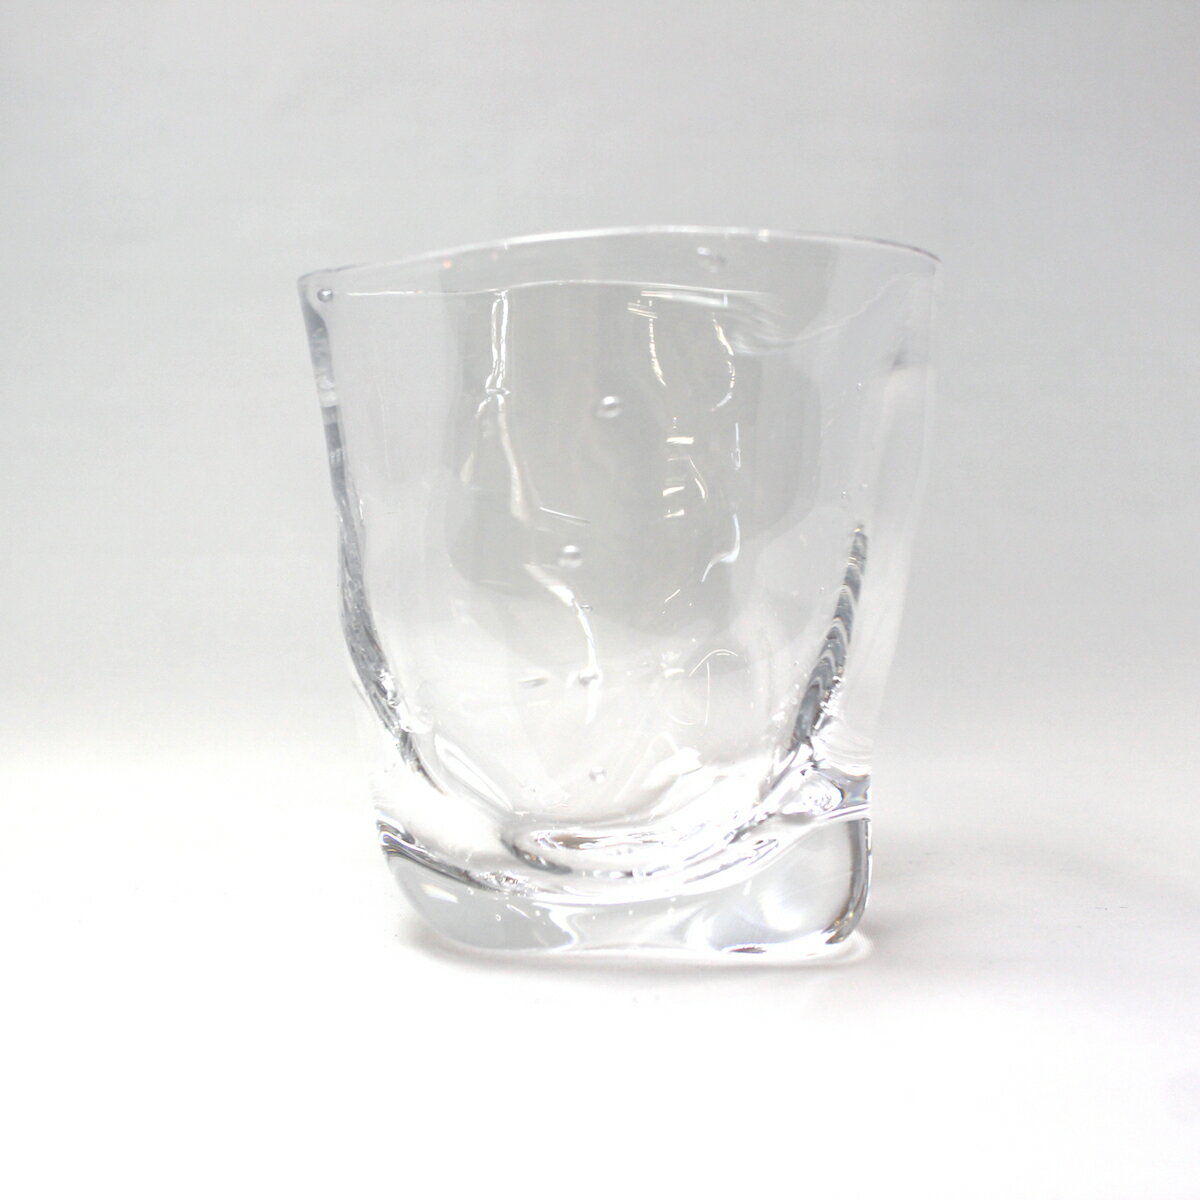 glasscalico（グラスキャリコ）『ミナモグラス』